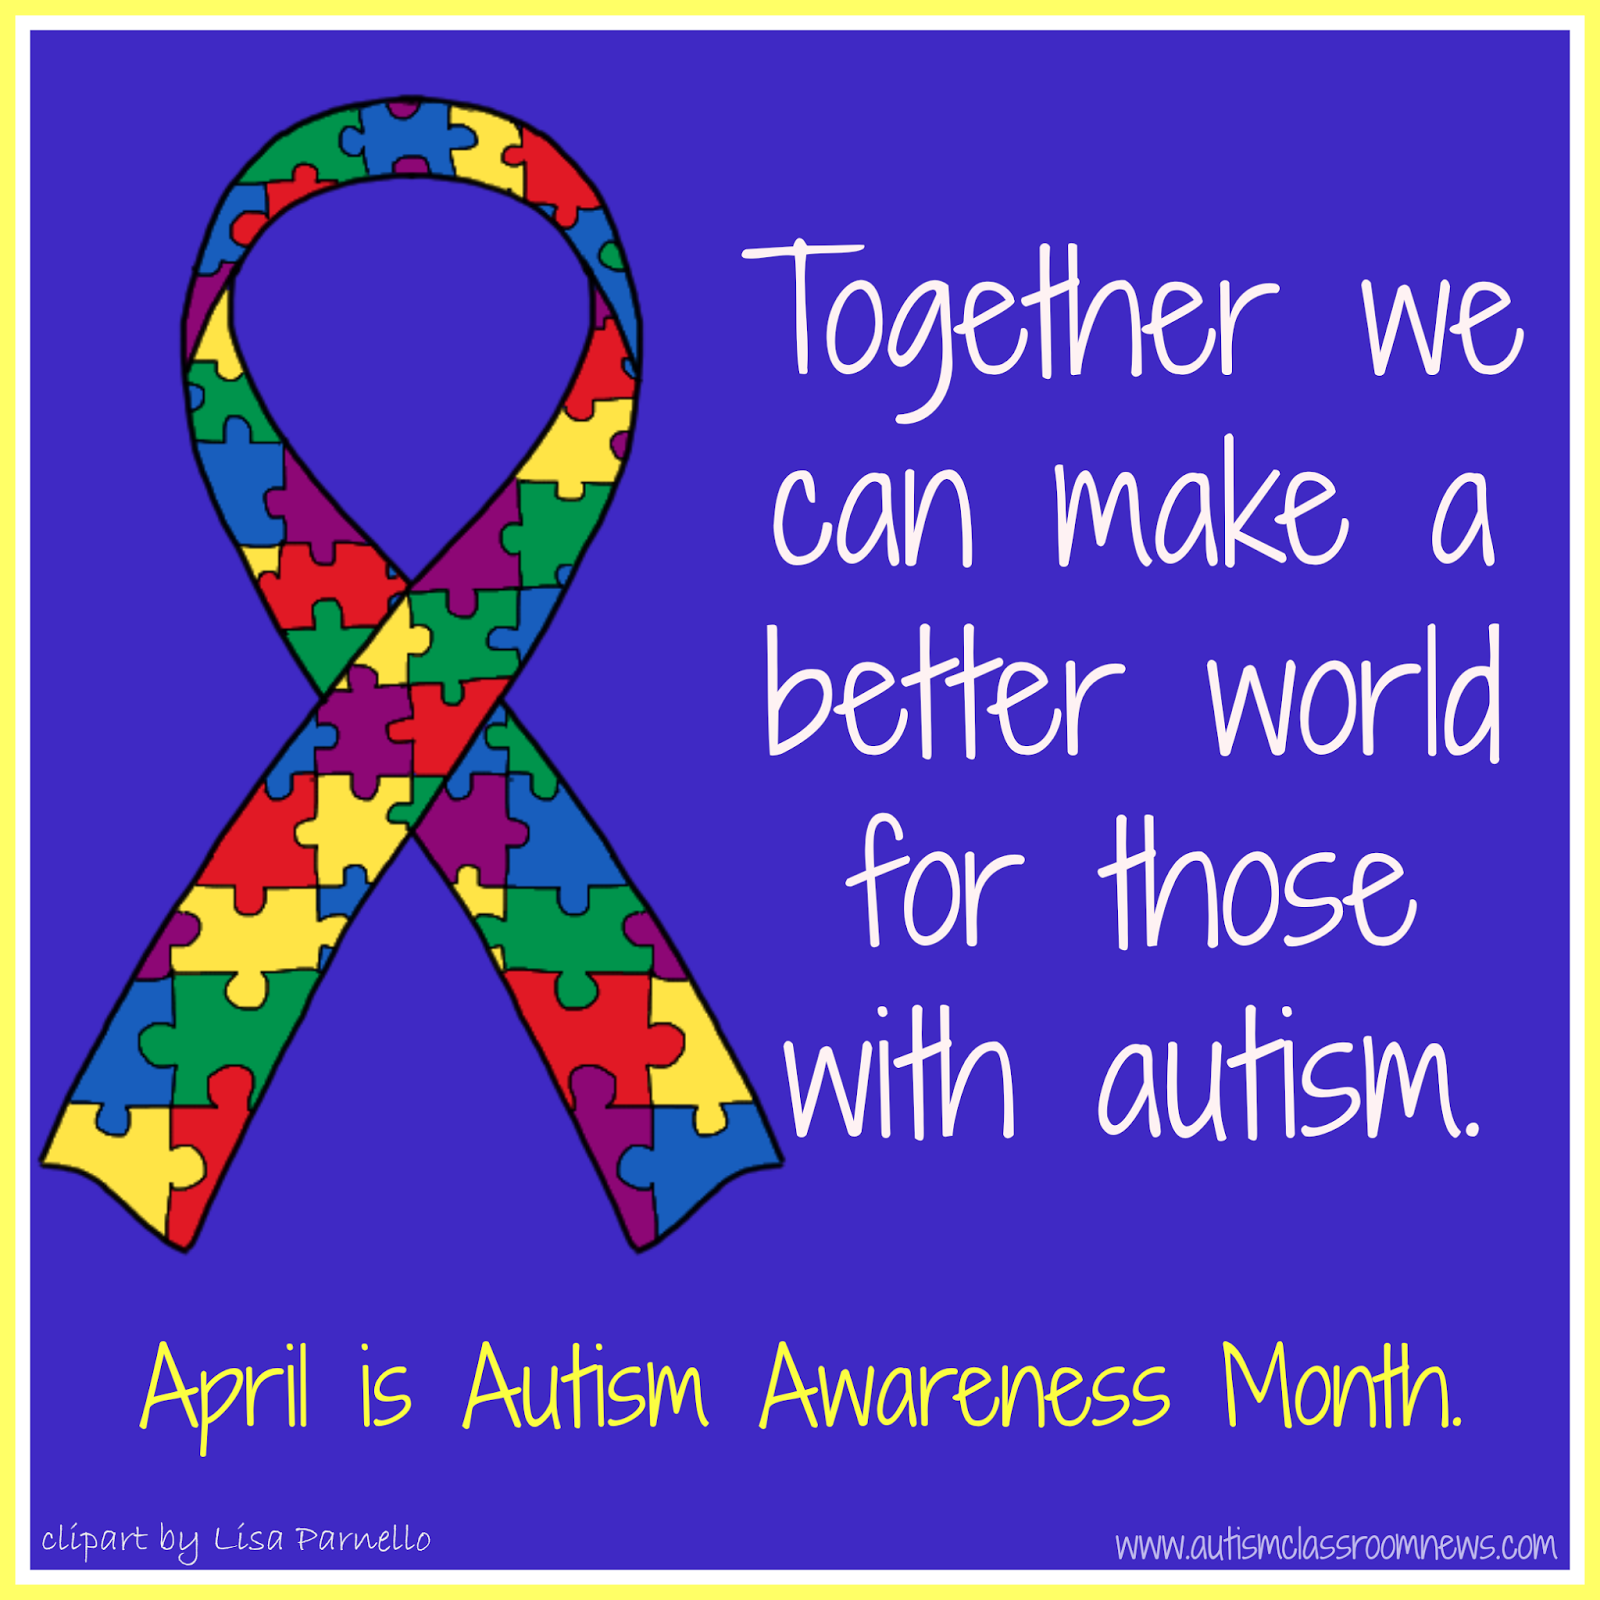 Autism Awareness Day and April